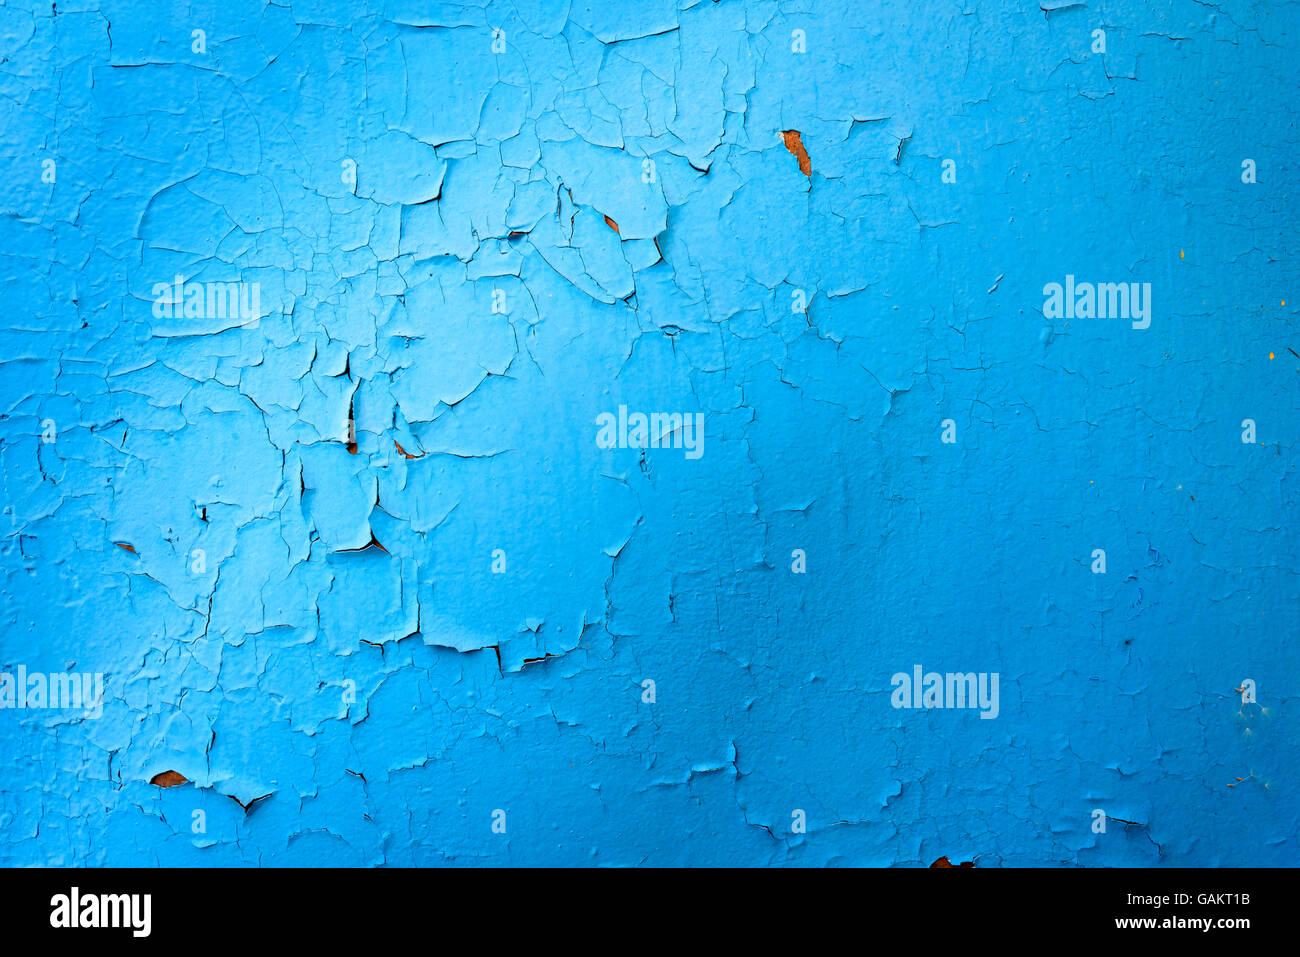 Hellen lebendige und auffallende blaue Farbe mit sichtbaren Risse und Abplatzungen durch Rost auf einer Metalloberfläche. Kopie-Space-Bereich Stockfoto